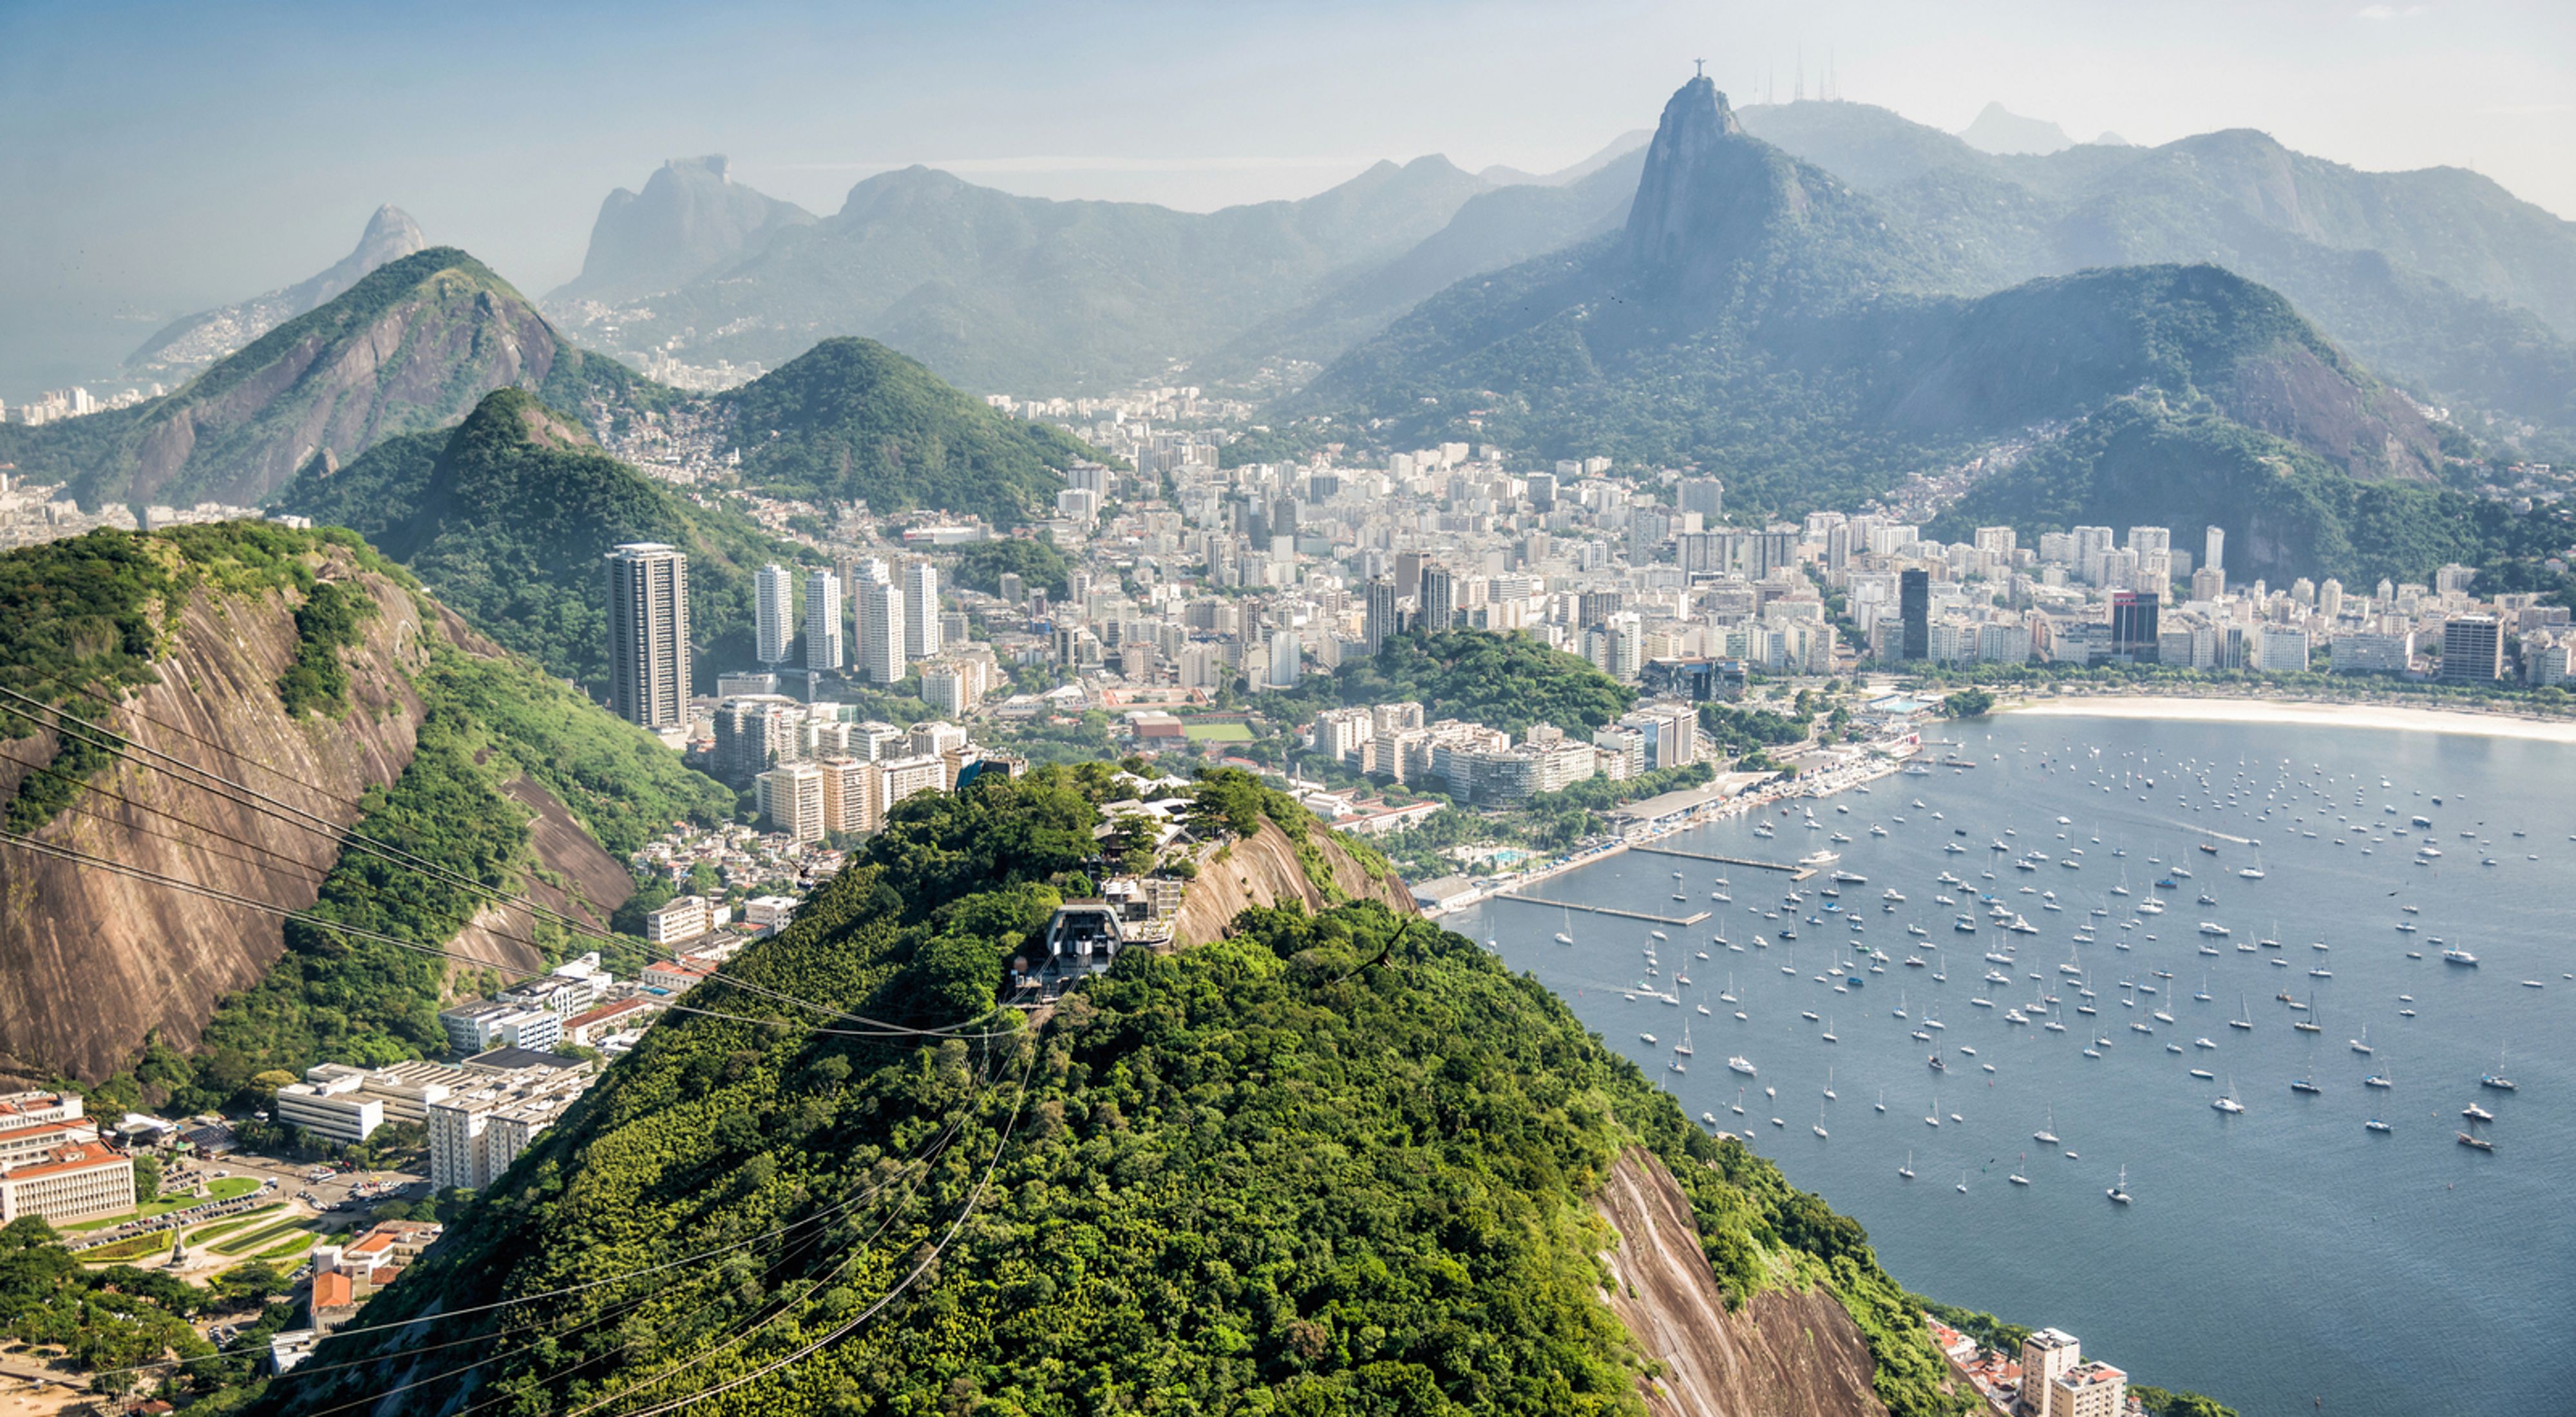  Vista aérea do Rio de Janeiro